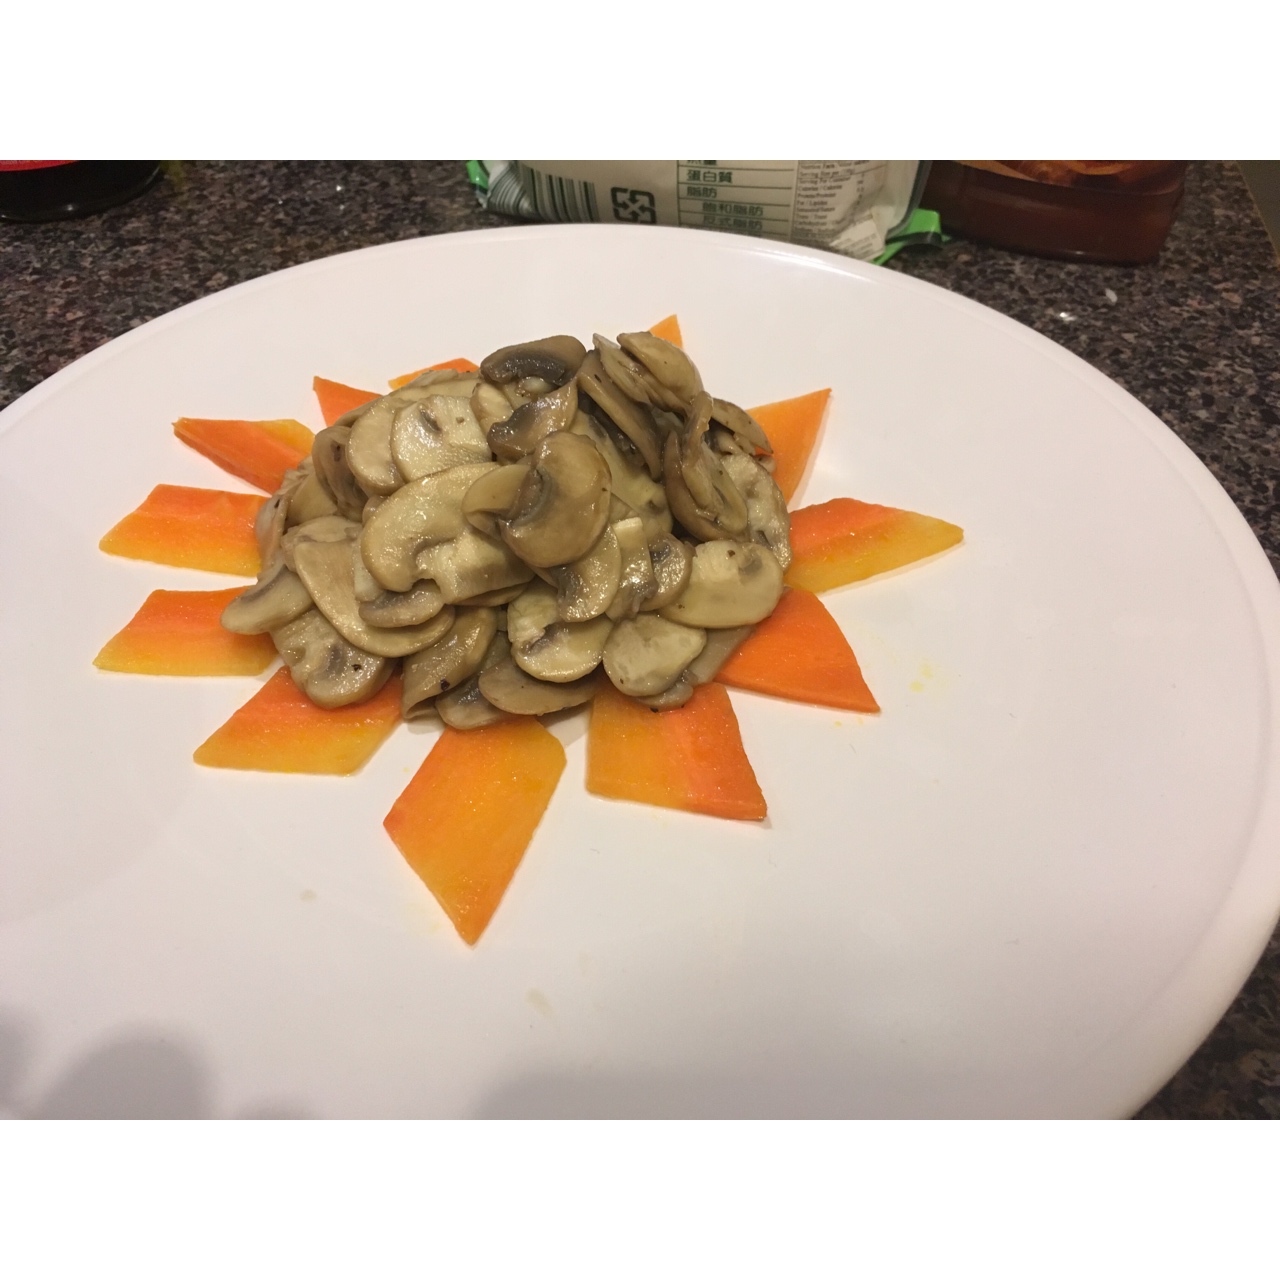 黄油煎蘑菇图片